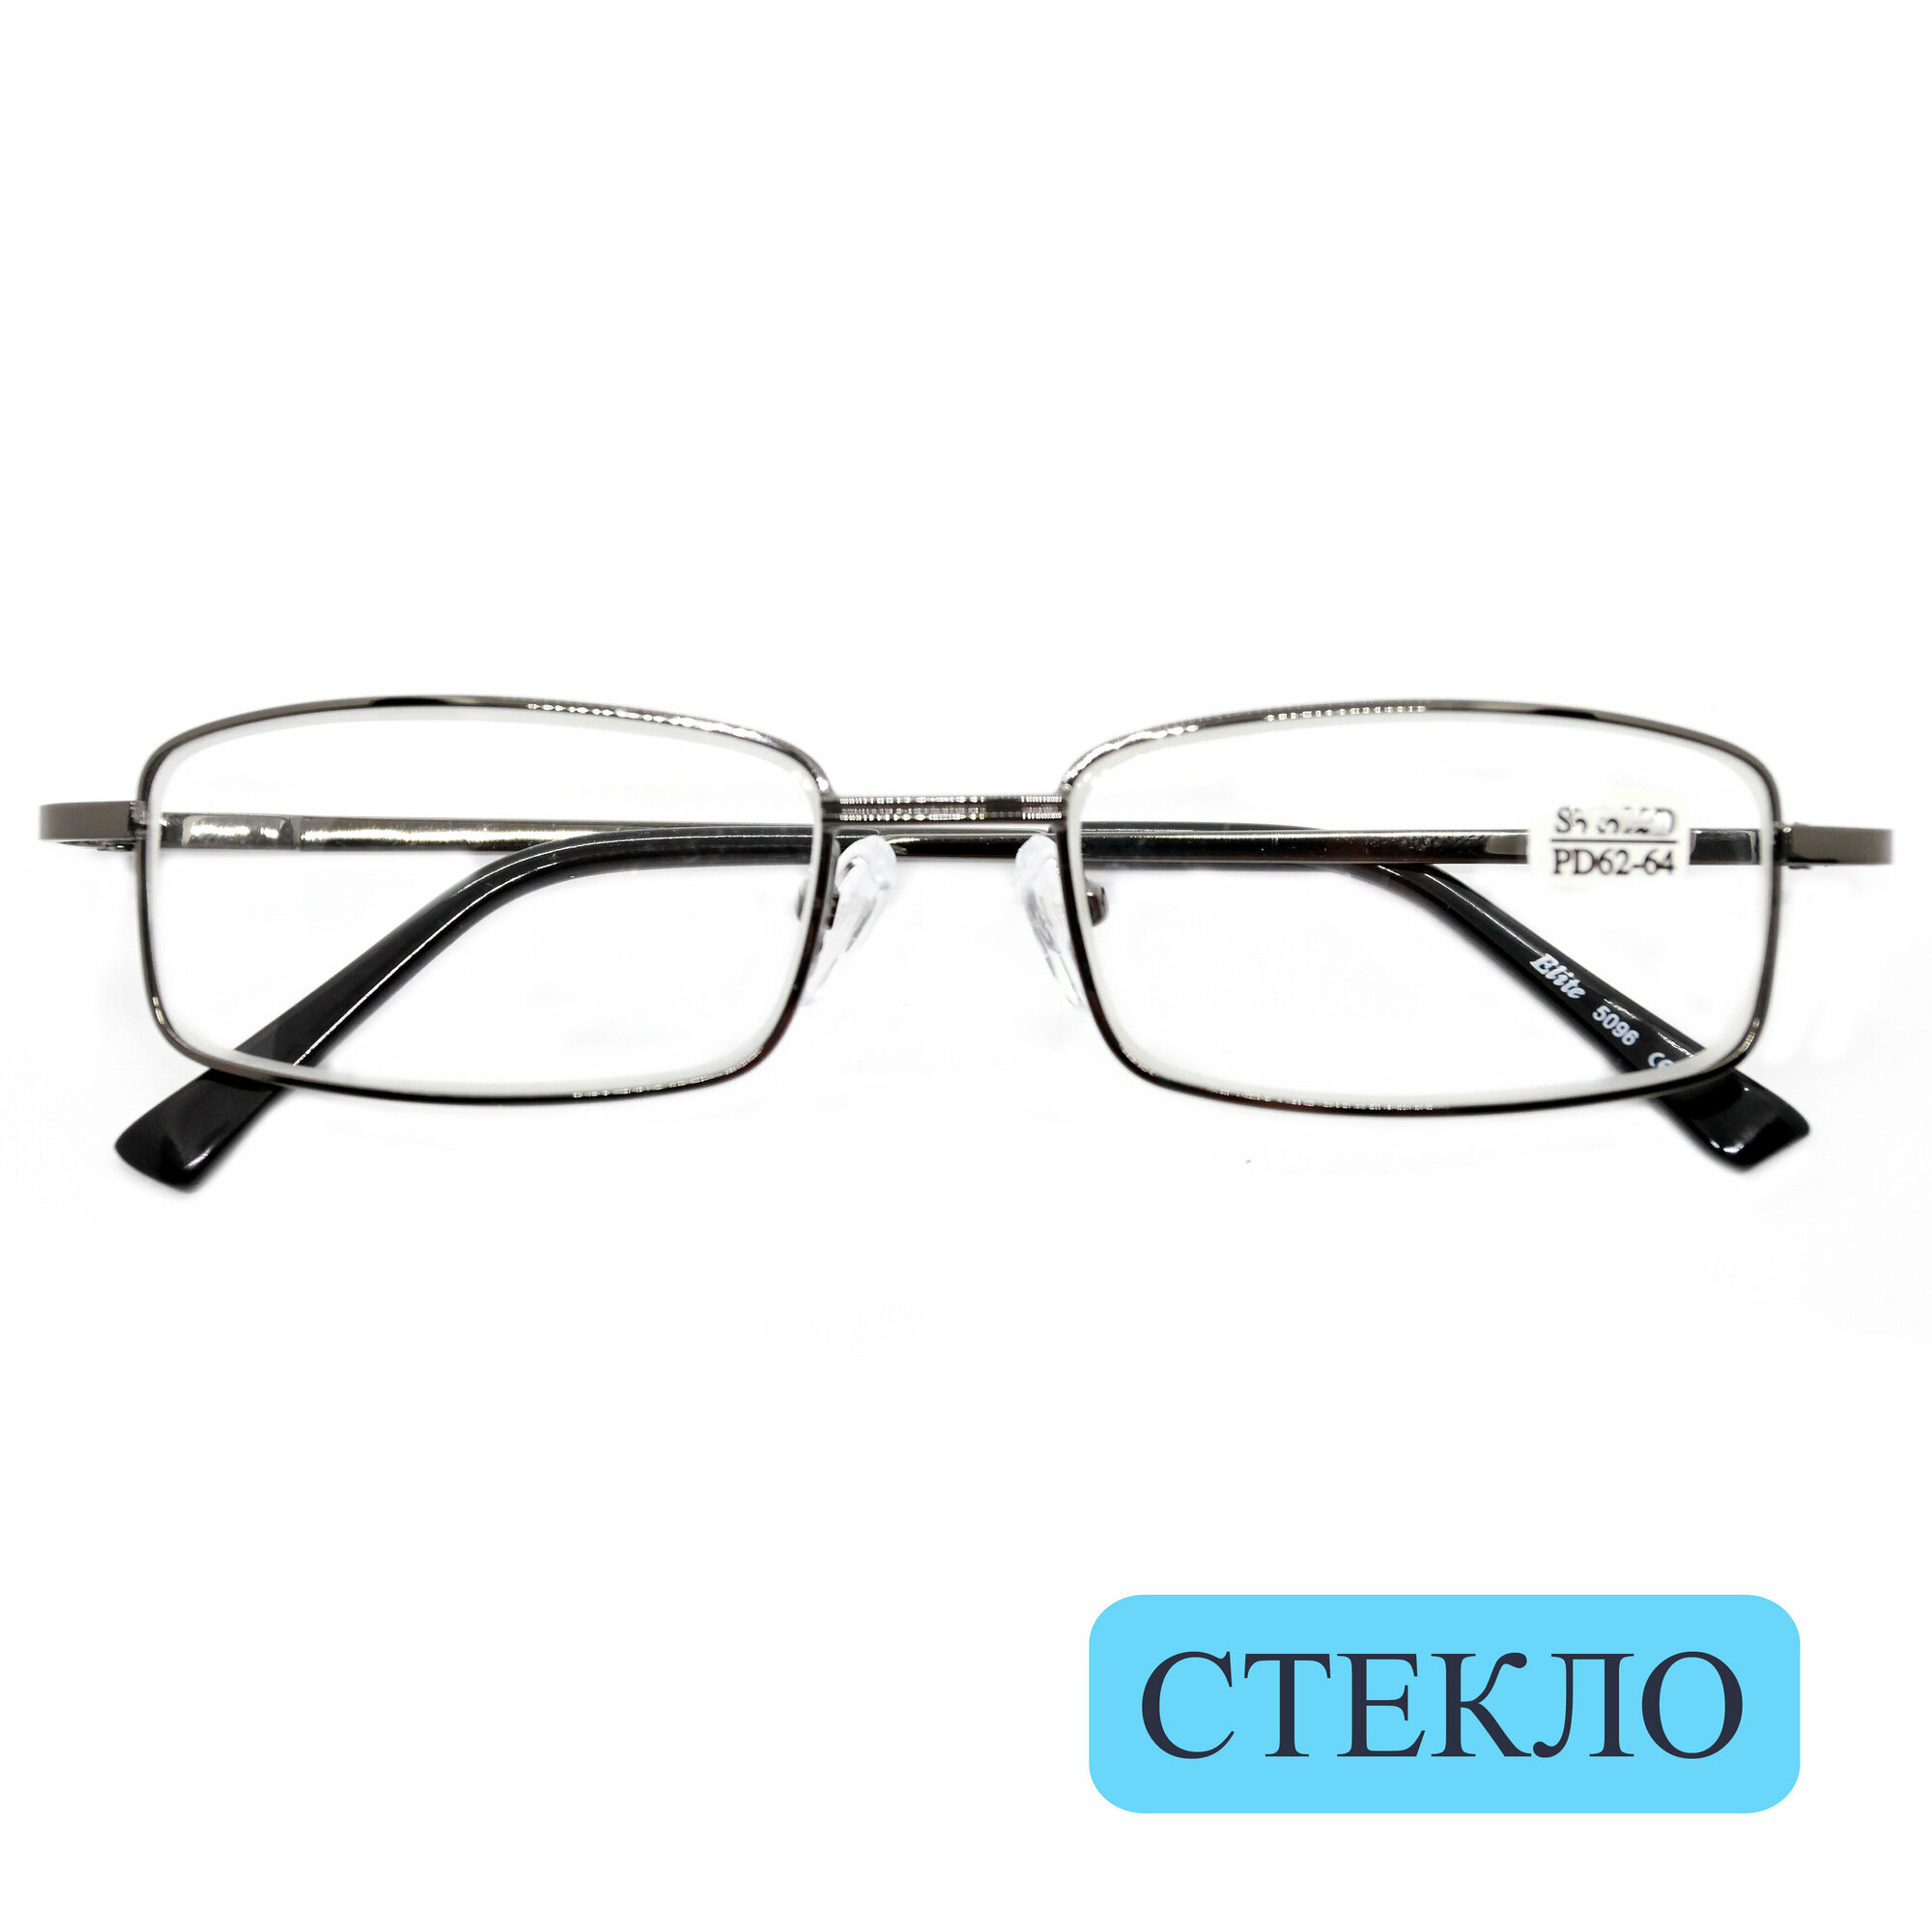 Качественные очки из медицинской стали со стеклом (+2.25) ELITE 5096, линза стекло, цвет серый, РЦ 62-64, с салфеткой